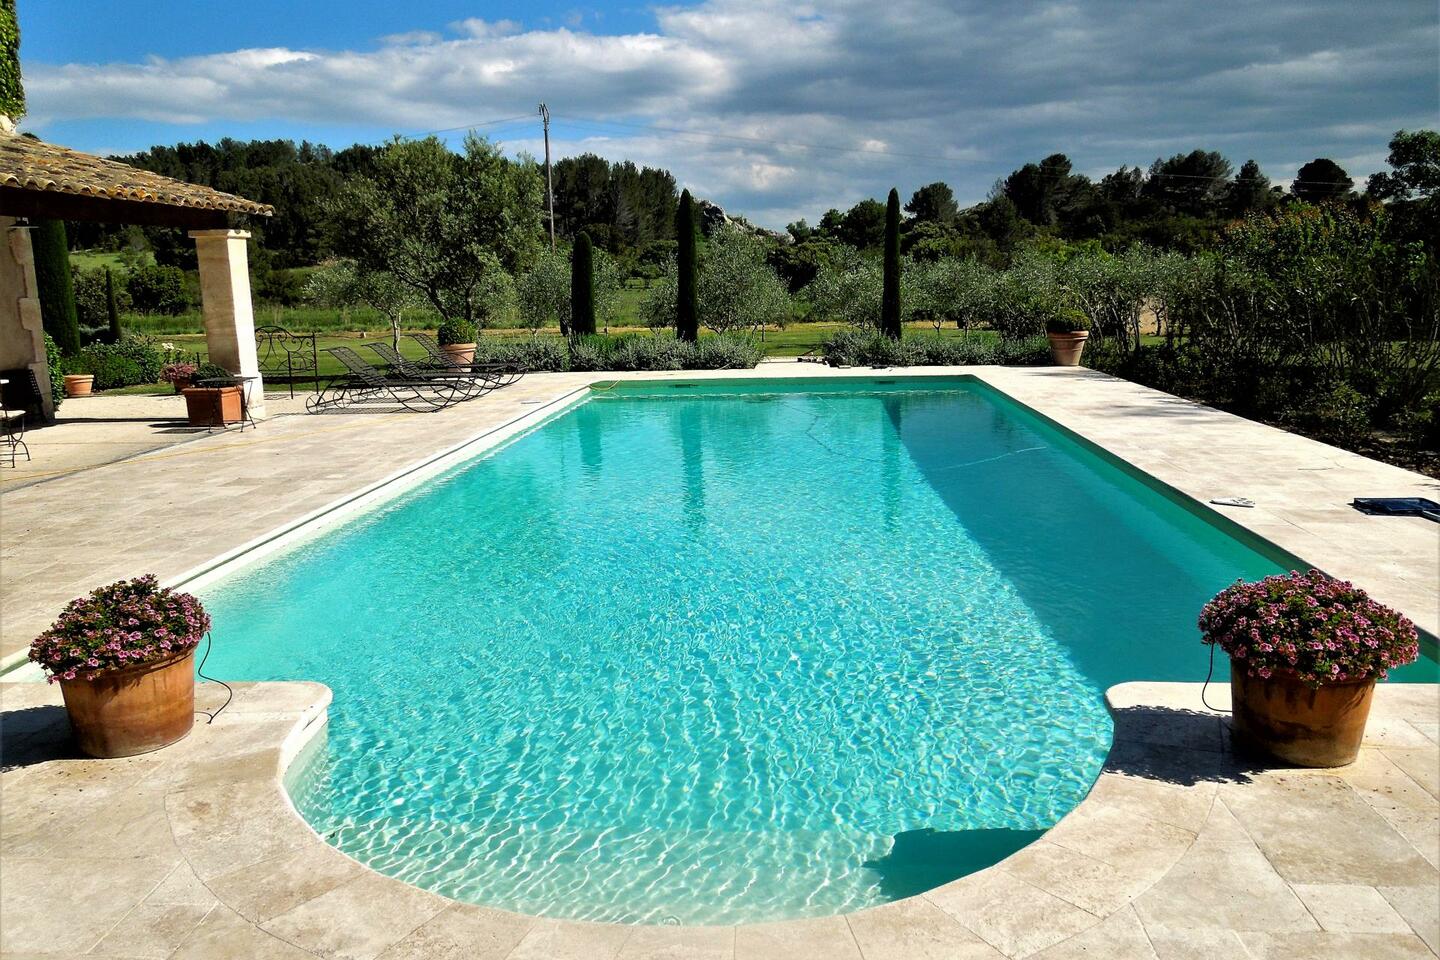 6 - Maison Paradou: Villa: Pool - Maison Paradou: zwembad van 15m x 6m, altijd in de zon